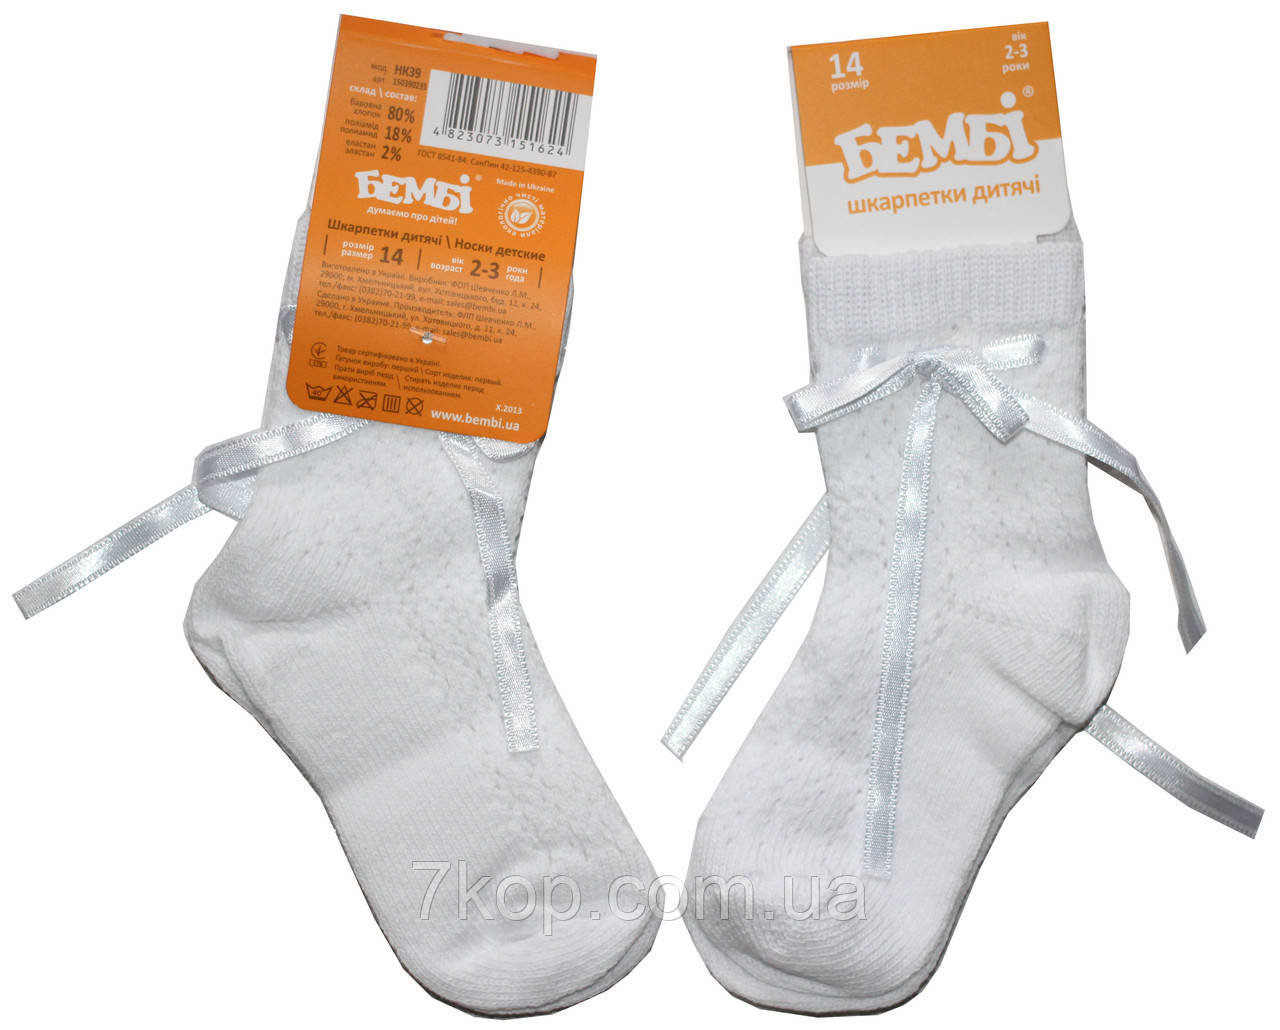 Шкарпетки святкові для дівчаток, білі з стрічками, розмір 14, Бембі